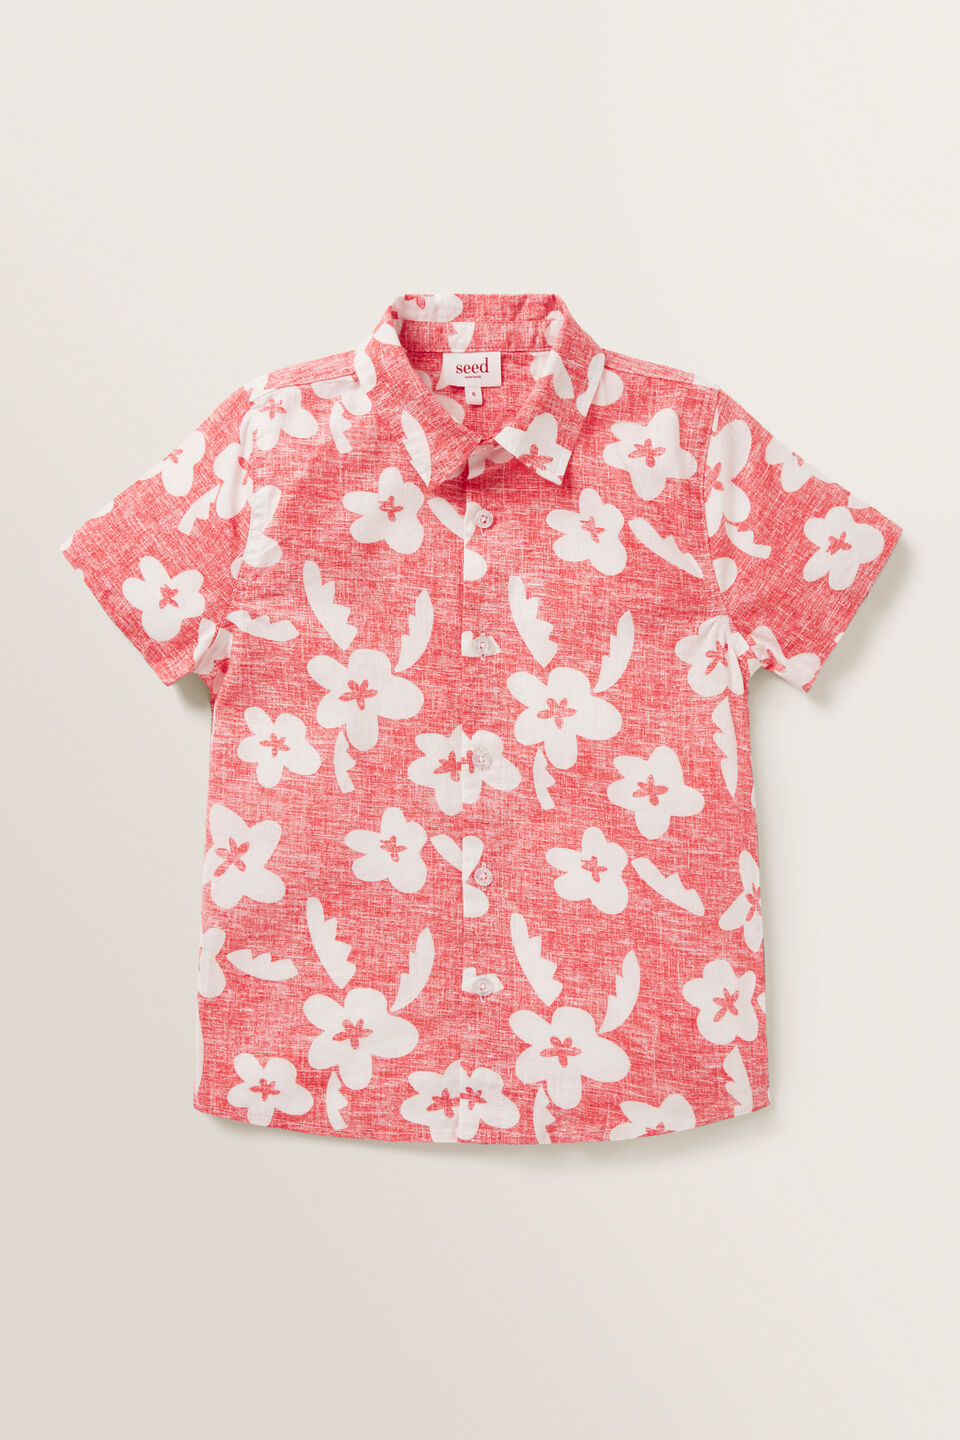 Retro Floral Shirt  